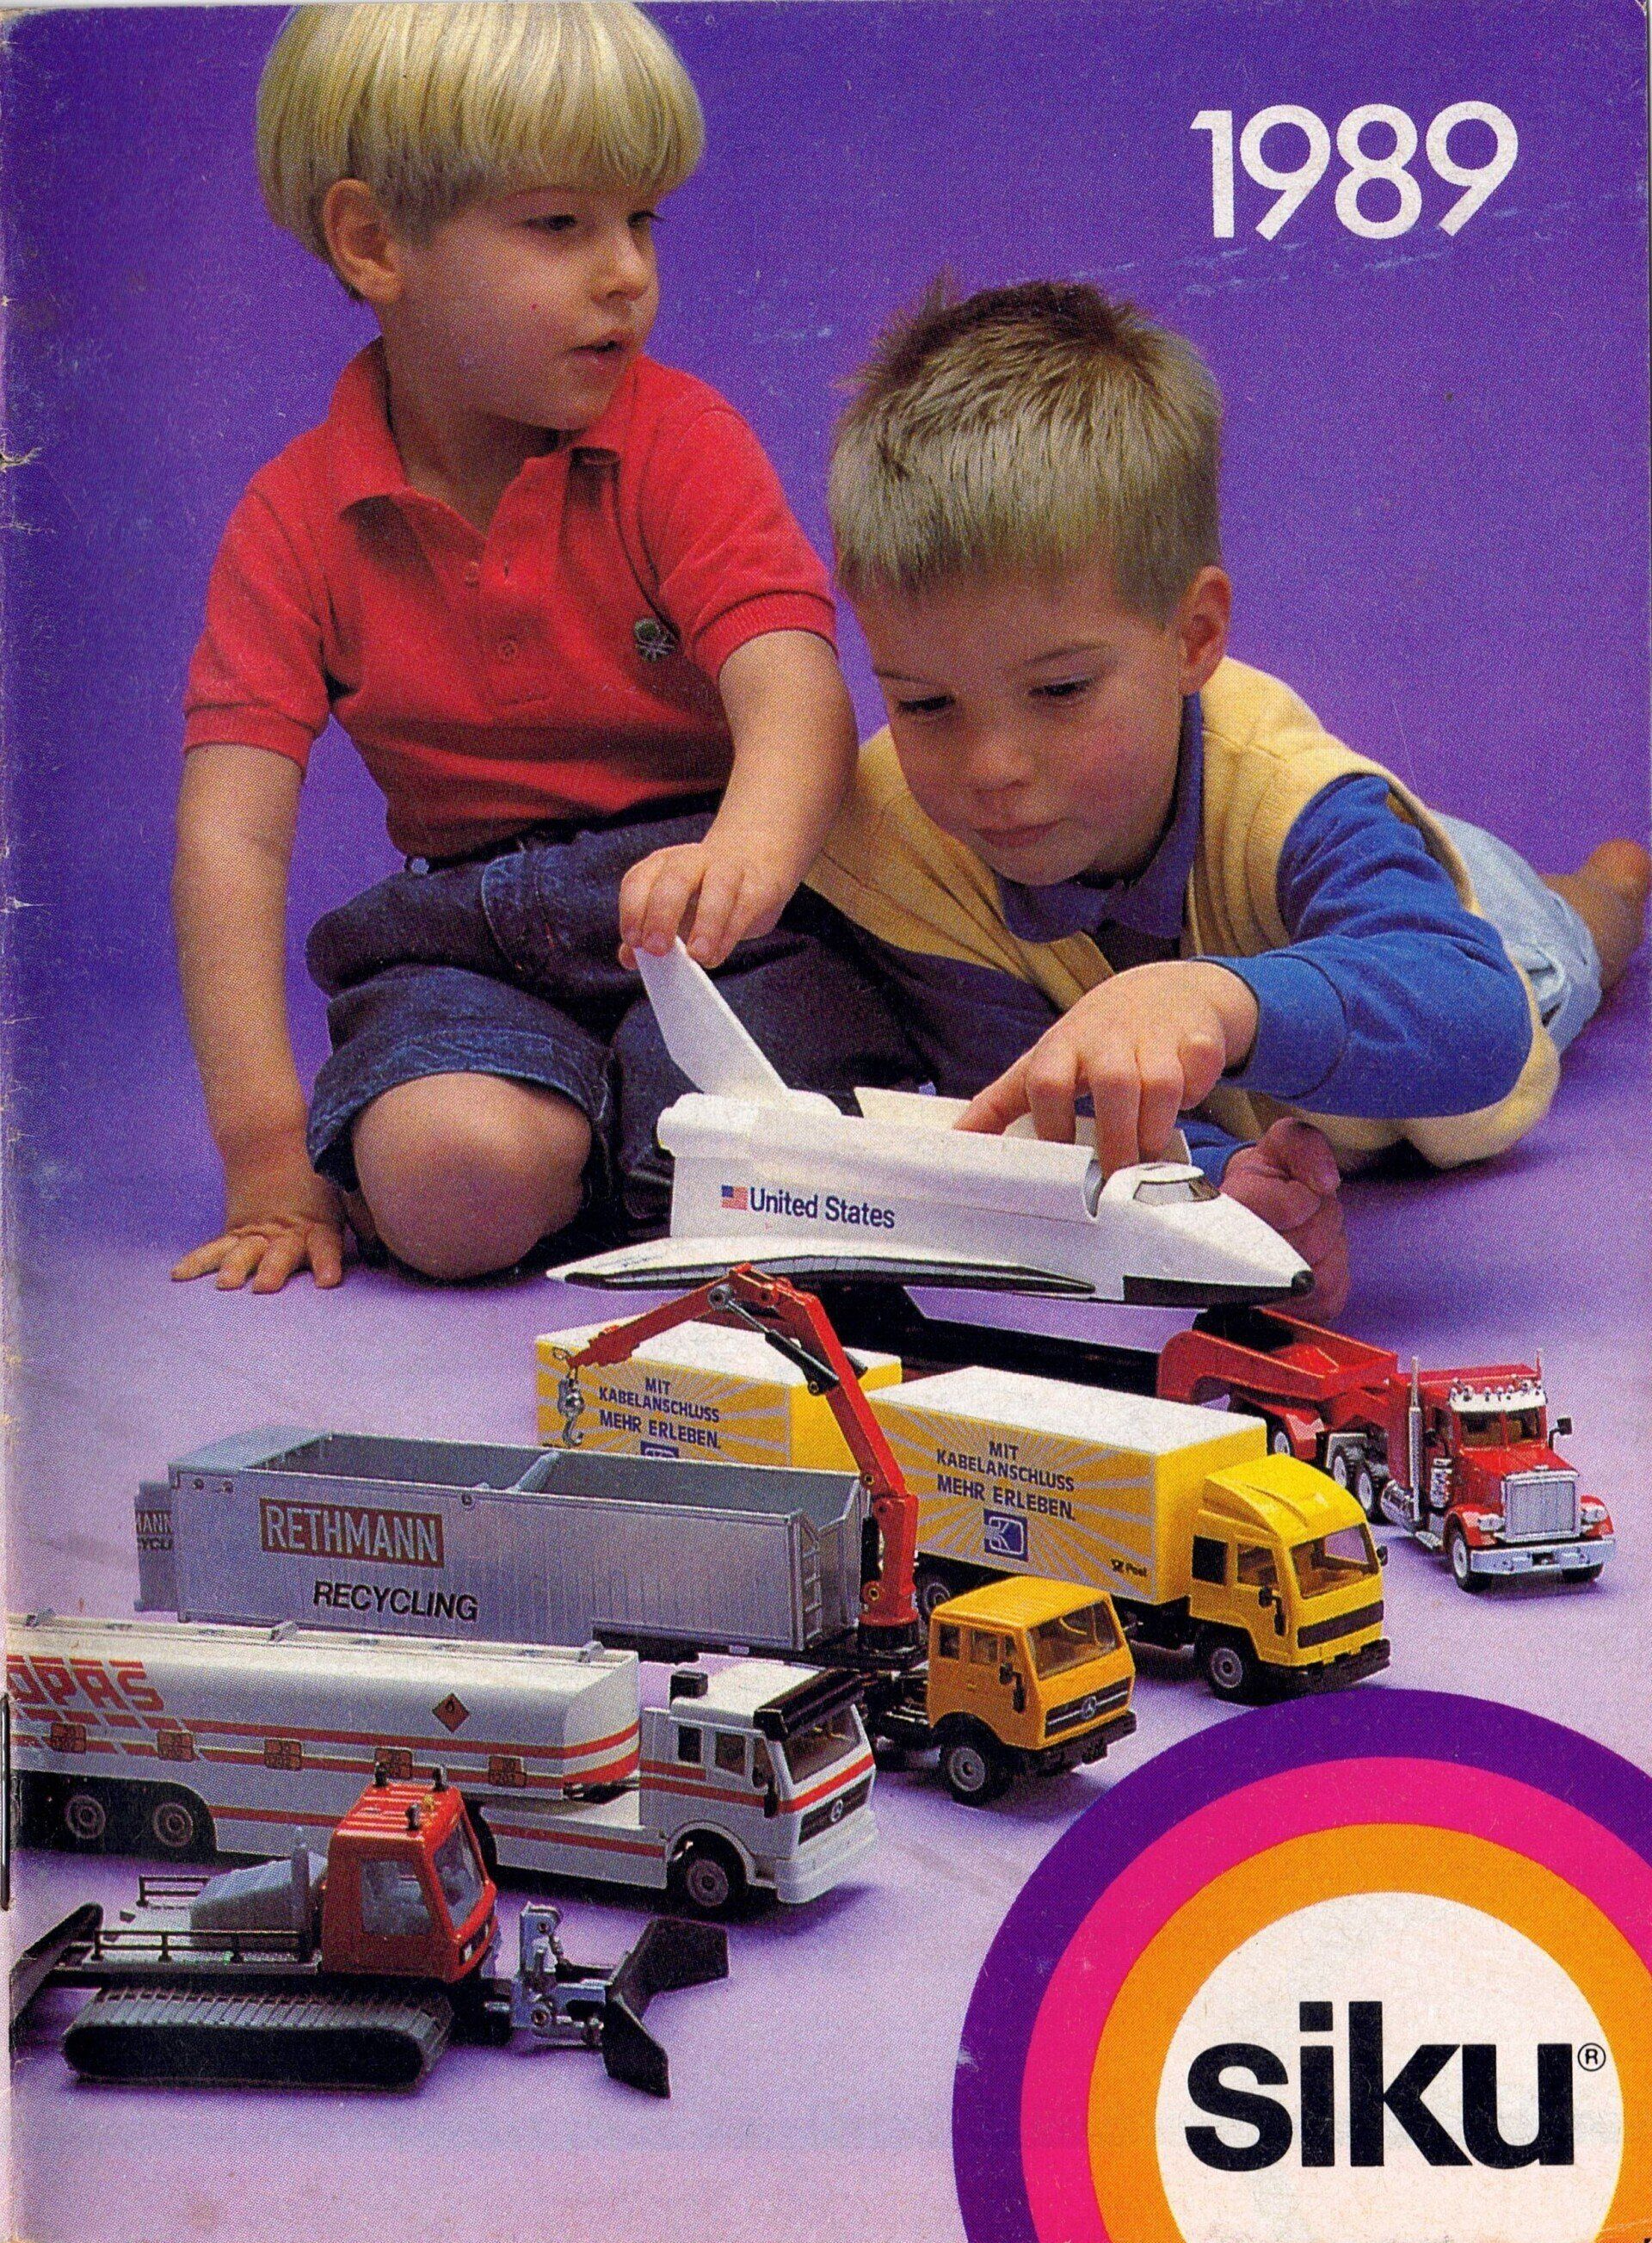 Siku Catalogue 1989